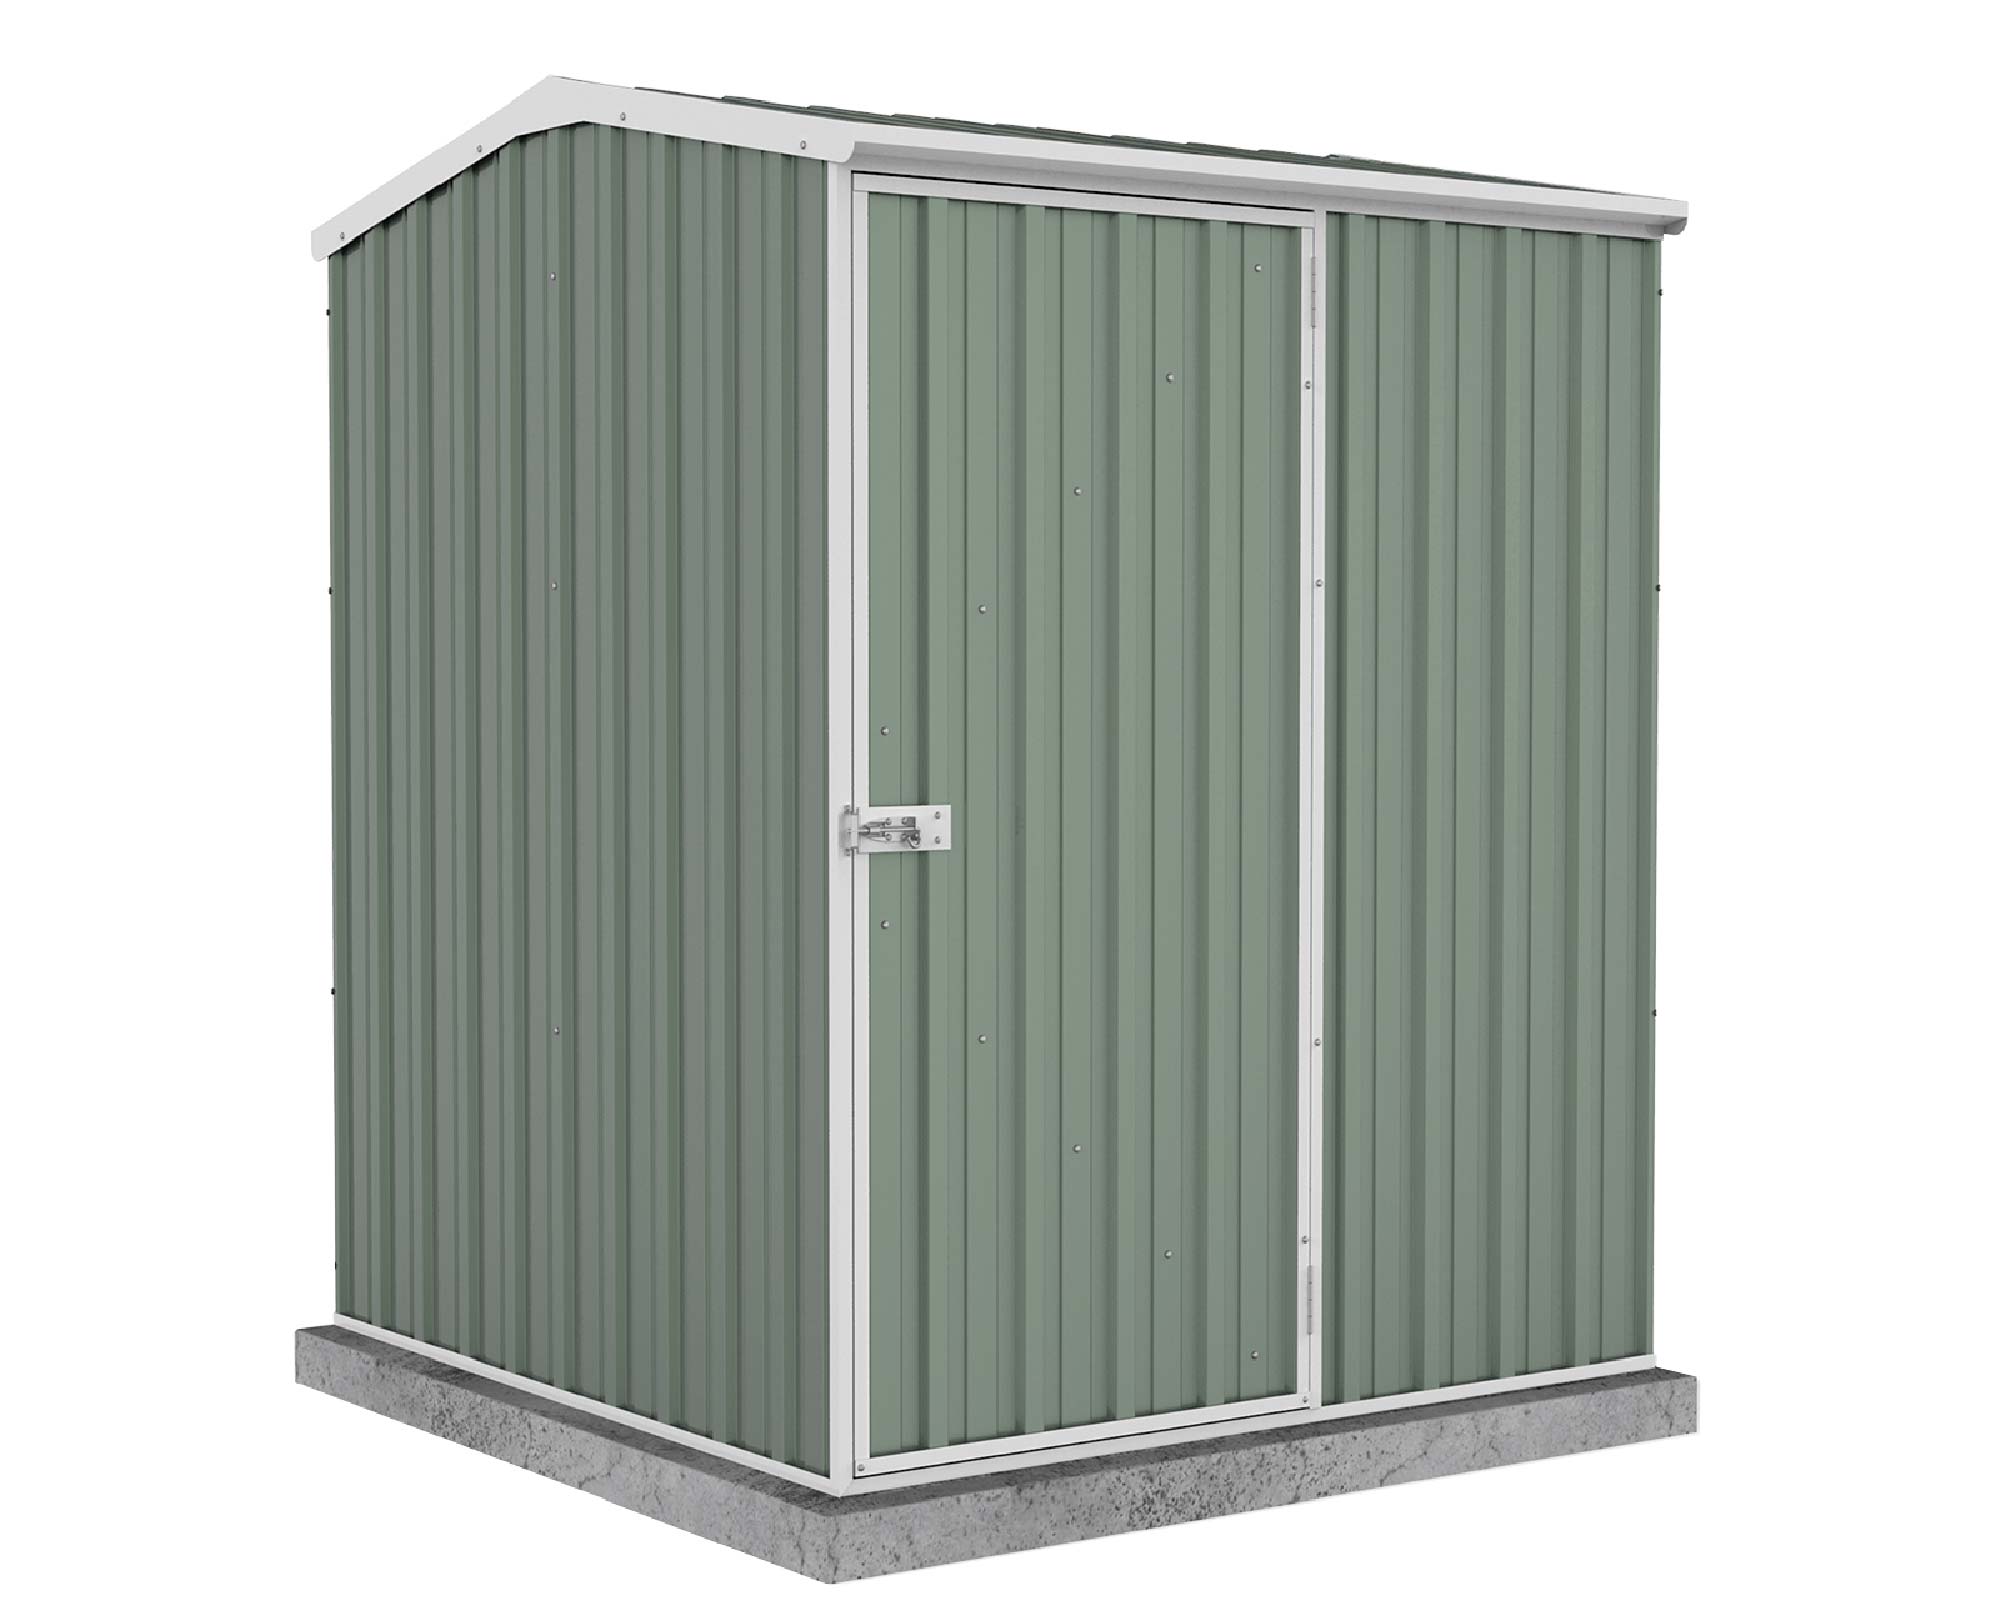 Premier Single Door Garden Shed - 1.52 x 1.52 x 2.08m ABSCO in Pale Eucalypt